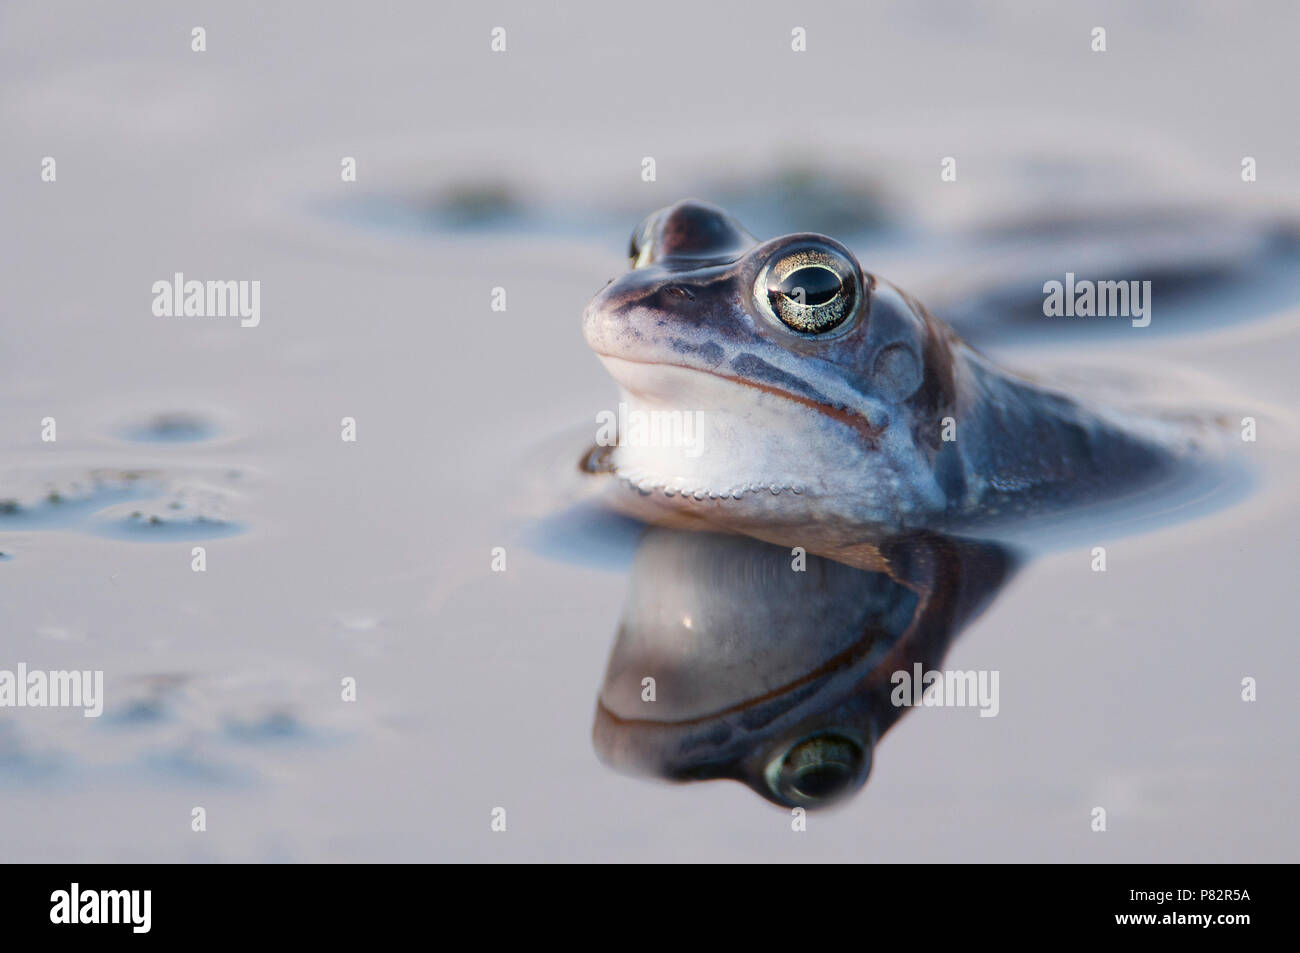 Heikikker; Moor frog Stock Photo